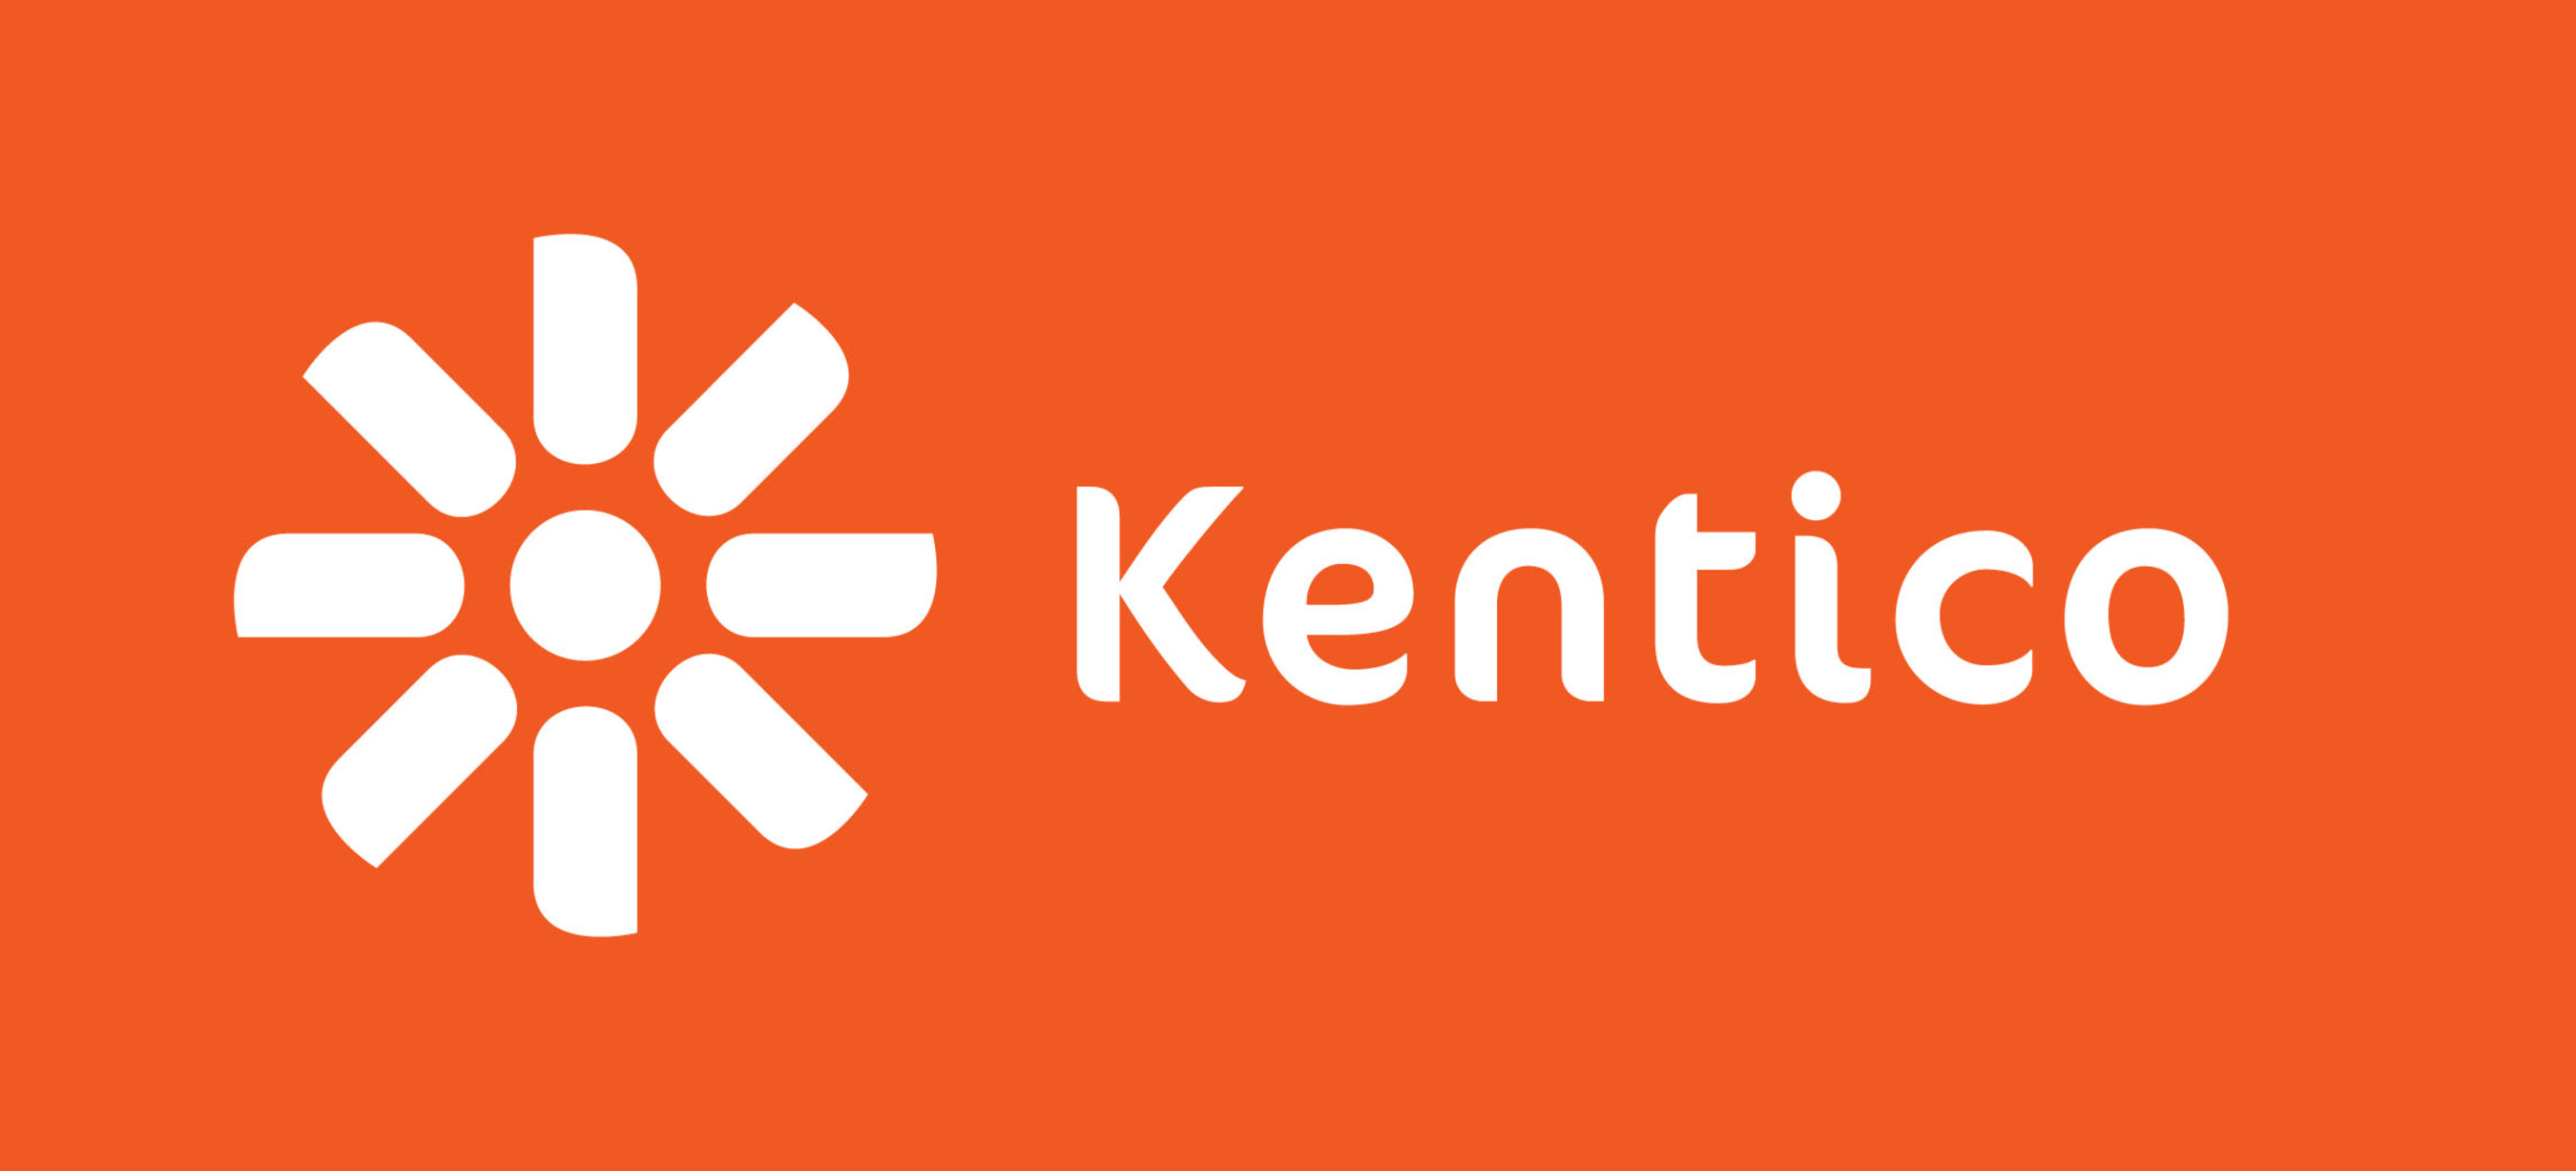 Kentico Software. (PRNewsFoto/Kentico Software) (PRNewsFoto/)